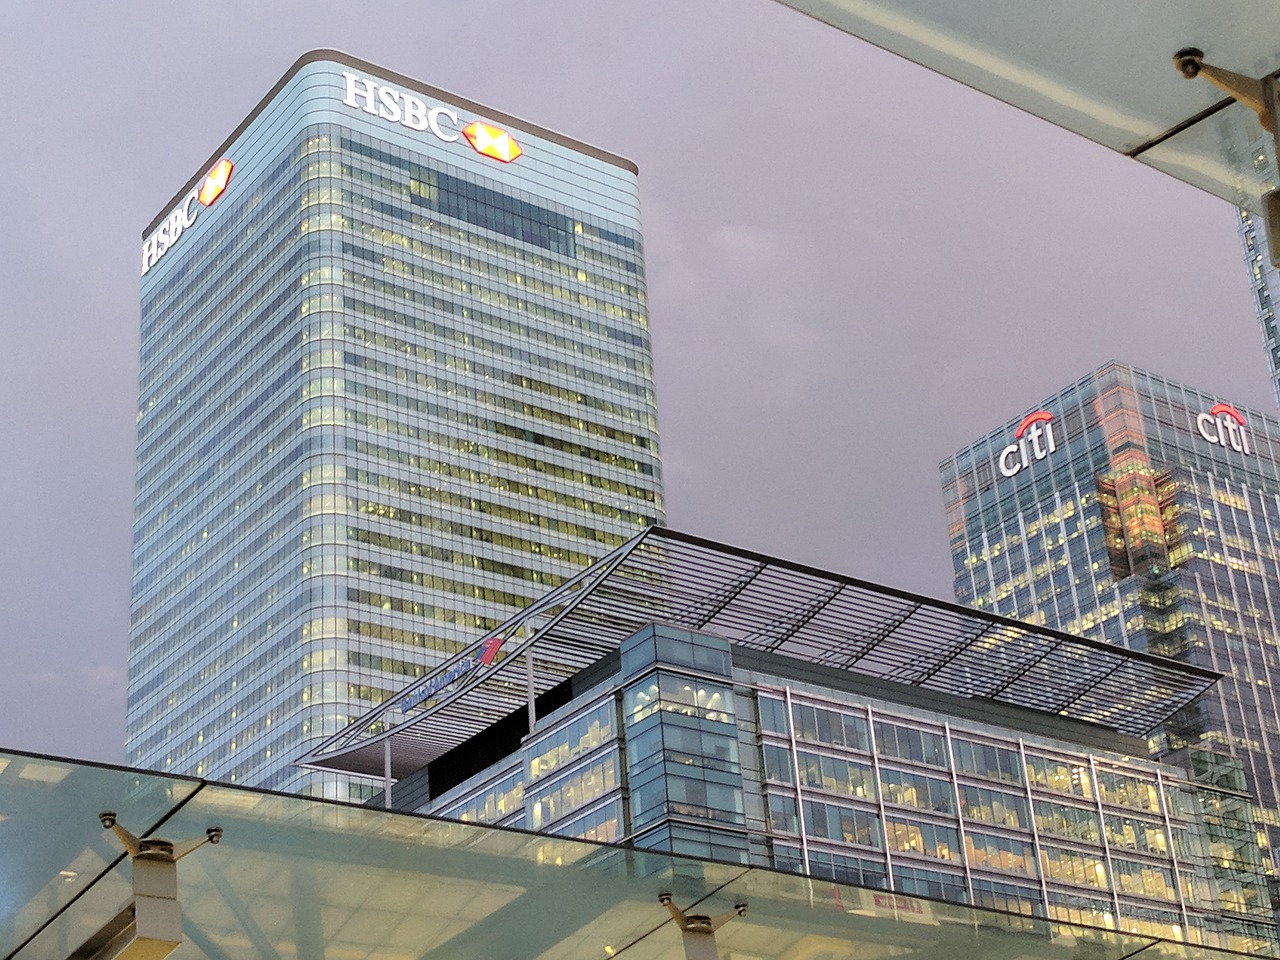 HSBC job cuts following decline in profits